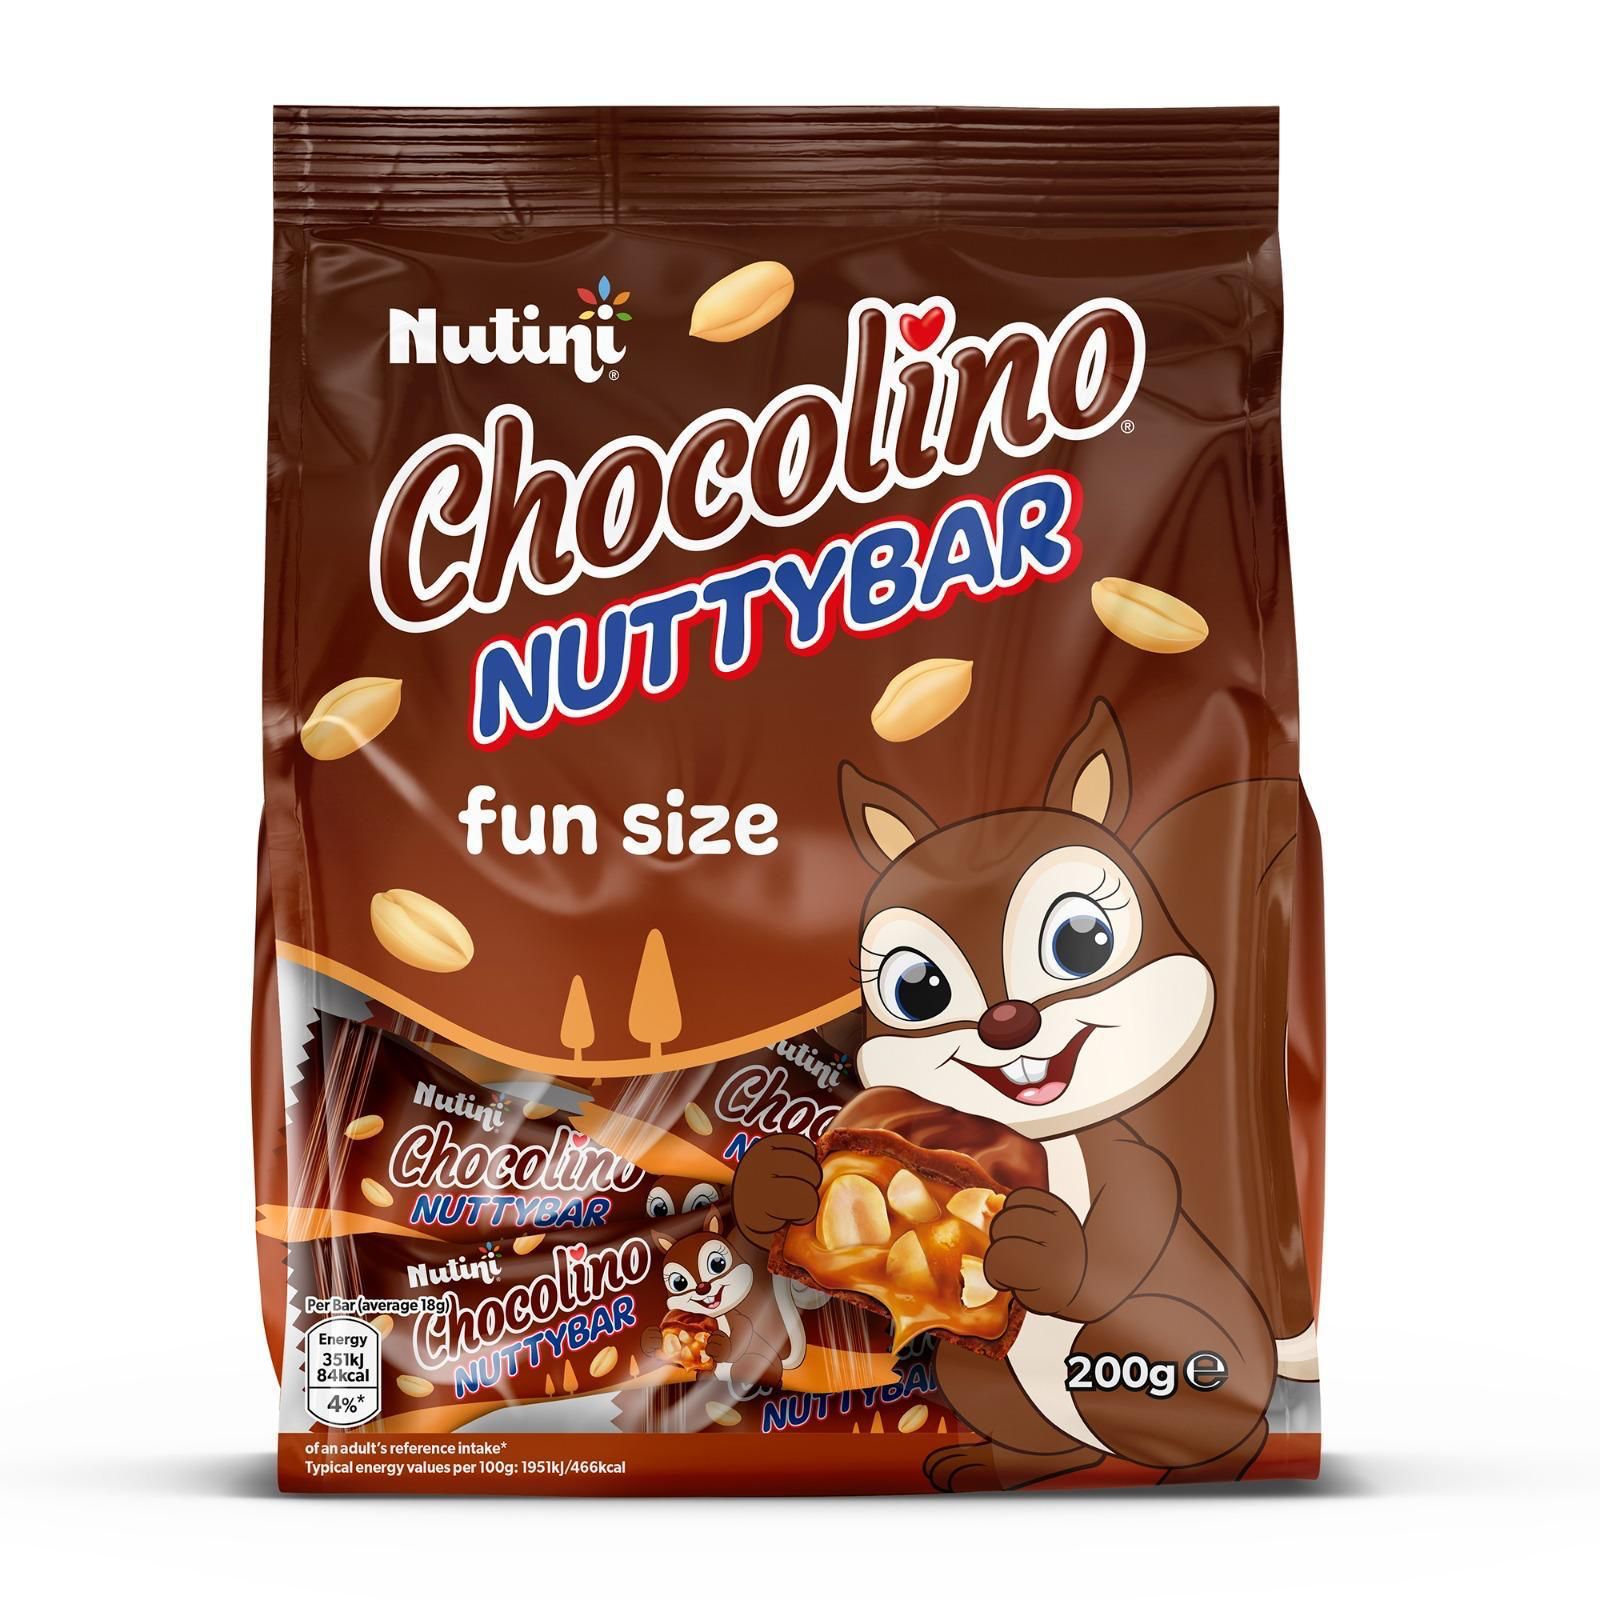 Nutuini Chocolino Nuttybar 200g